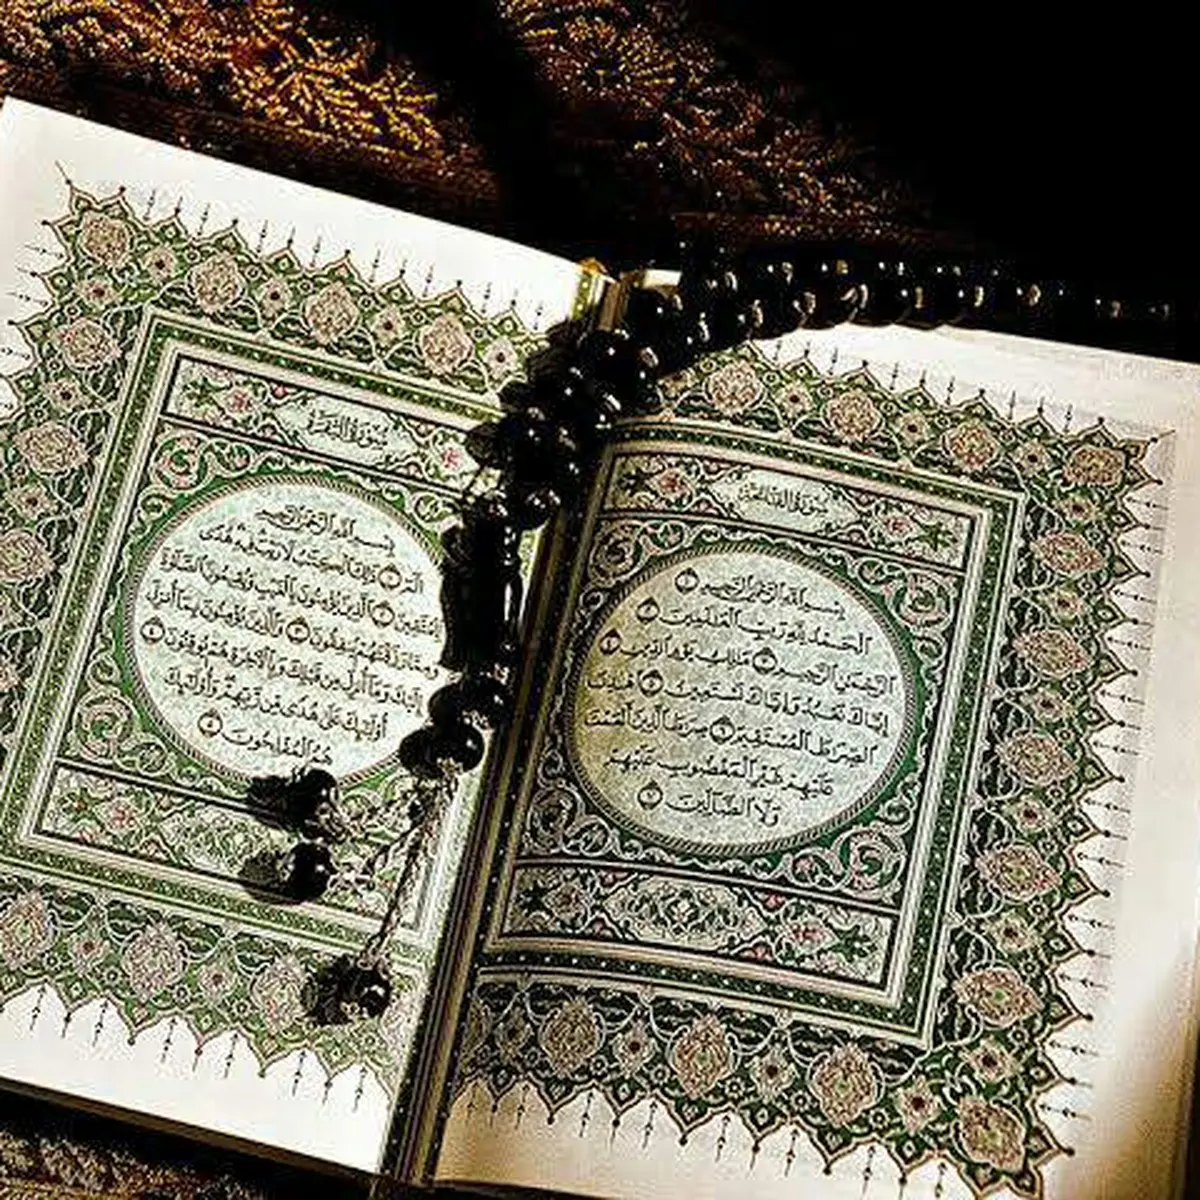 Doa Memohon Pertolongan Allah dalam Al-Qur'an, Wajib Hafal!